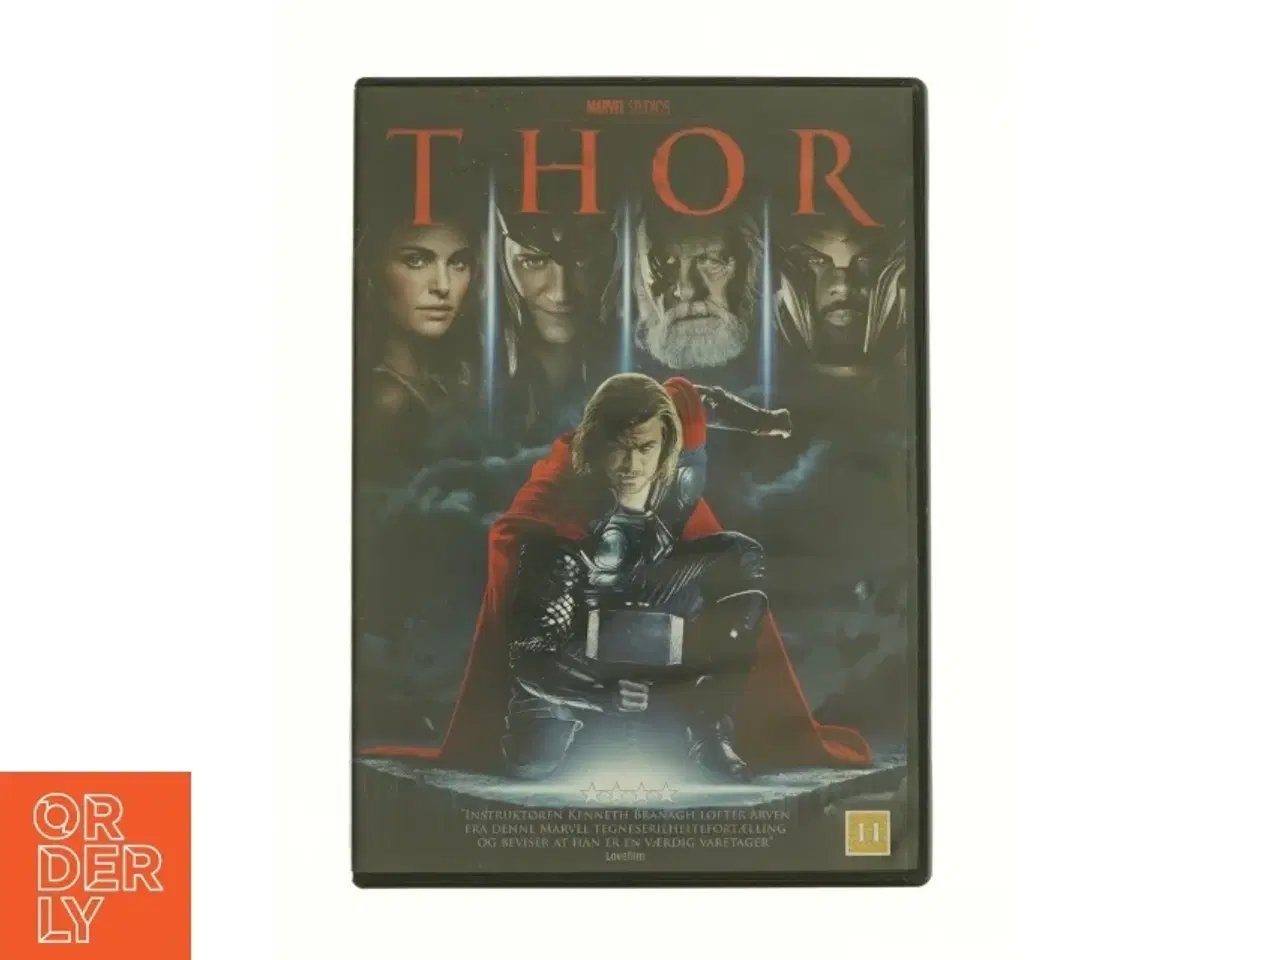 Billede 1 - Thor fra dvd